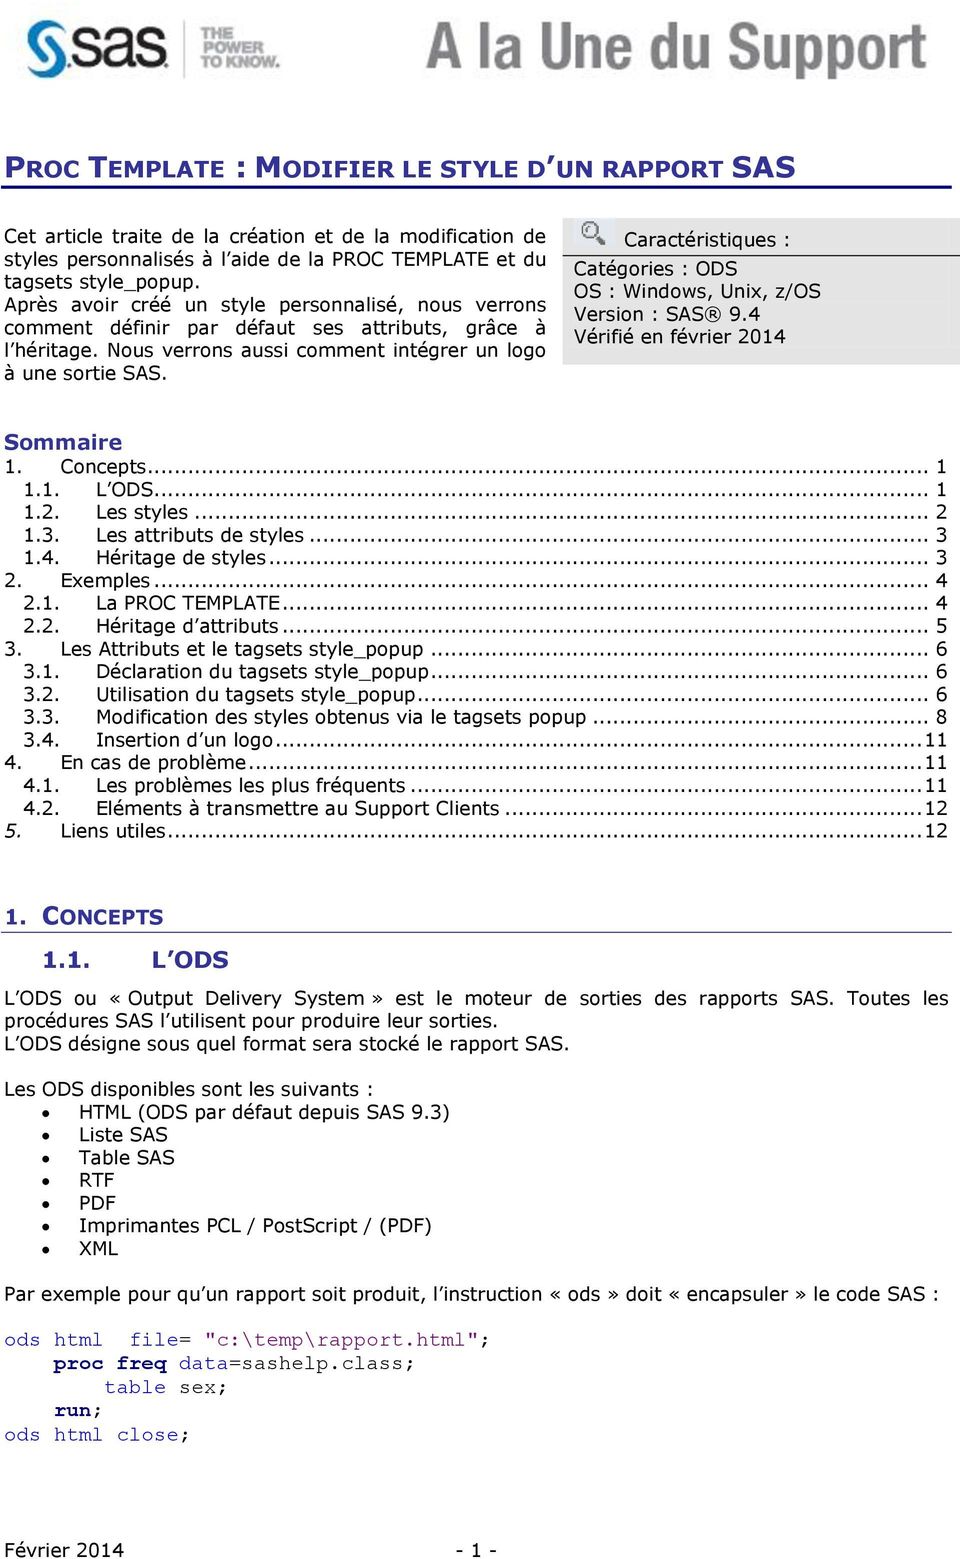 Caractéristiques : Catégories : ODS OS : Windows, Unix, z/os Version : SAS 9.4 Vérifié en février 2014 Sommaire 1. Concepts... 1 1.1. L ODS... 1 1.2. Les styles... 2 1.3. Les attributs de styles... 3 1.